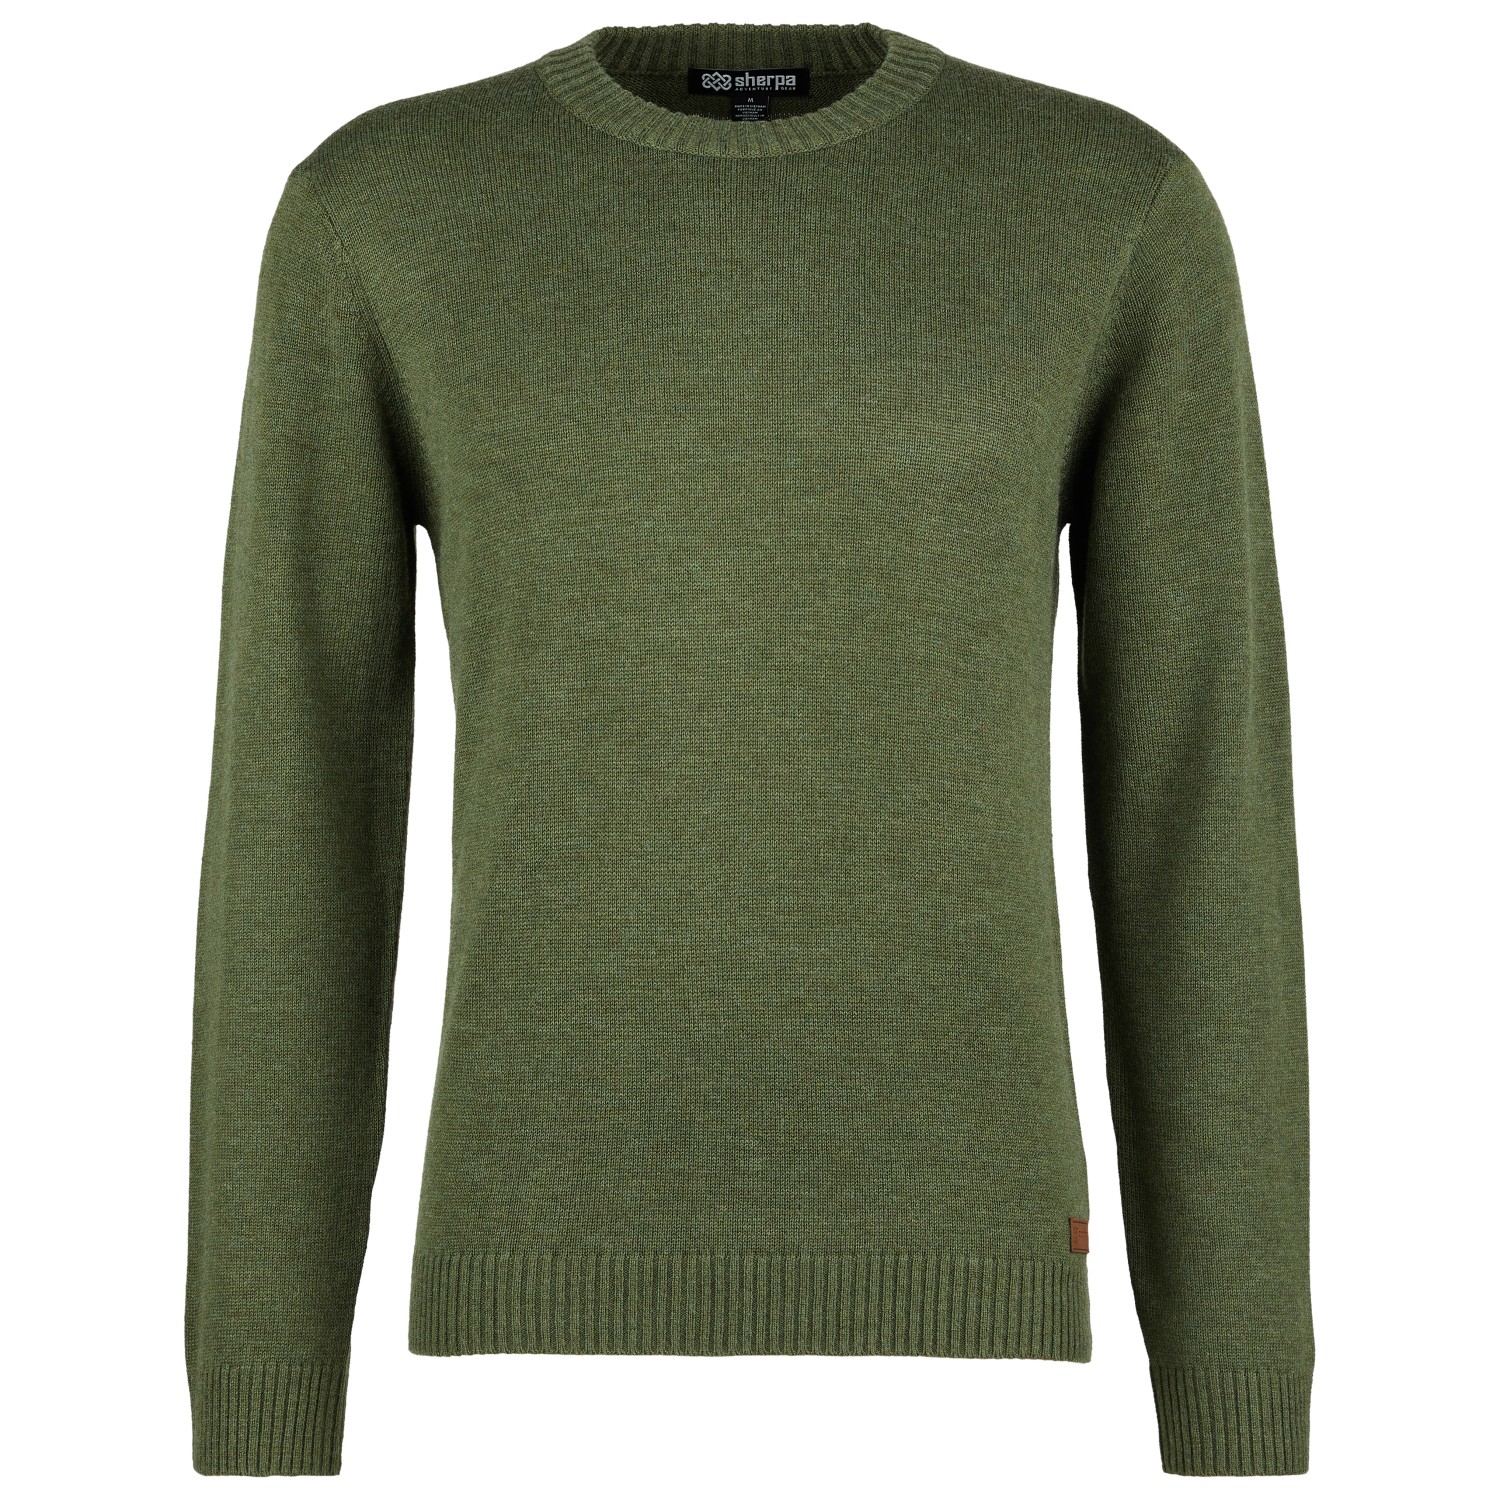 Пуловер Sherpa Phoktey Crew, цвет Evergreen осенний свитер сказочный тонкий однотонный мягкий мужской свитер для работы мужской свитер зимний свитер